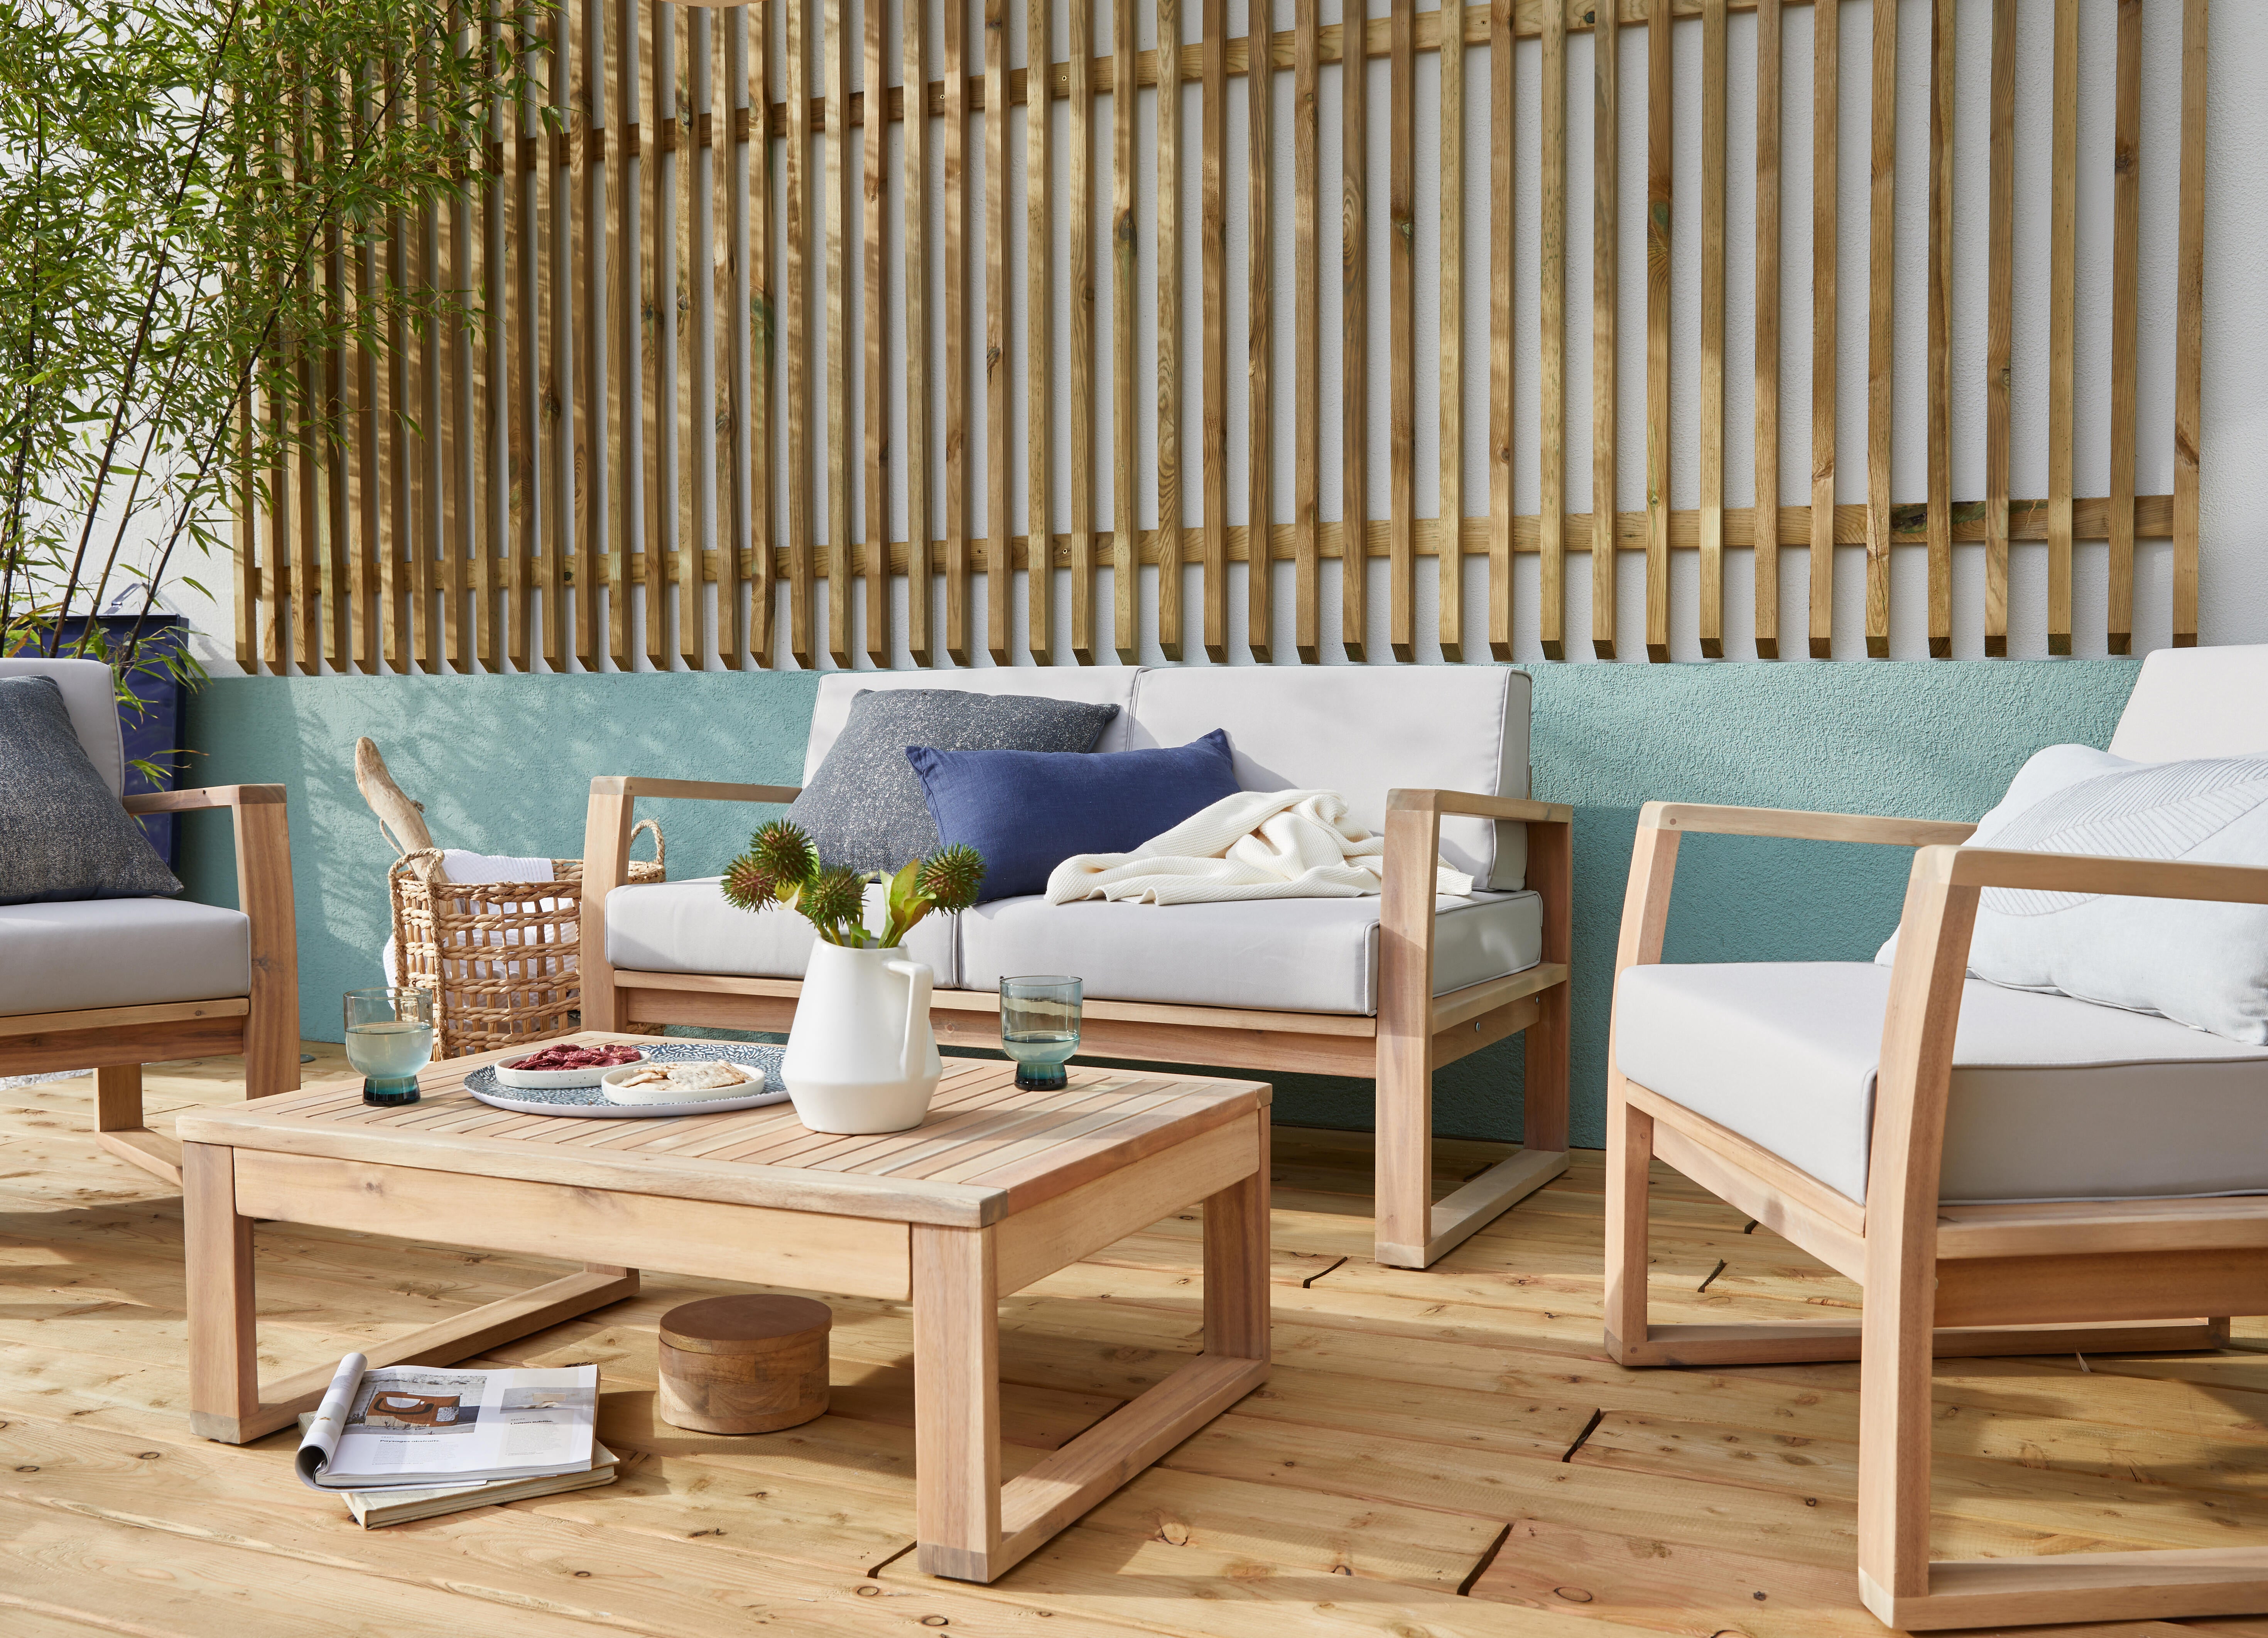 Achetez votre meuble de jardin - mobilier de jardin en ligne